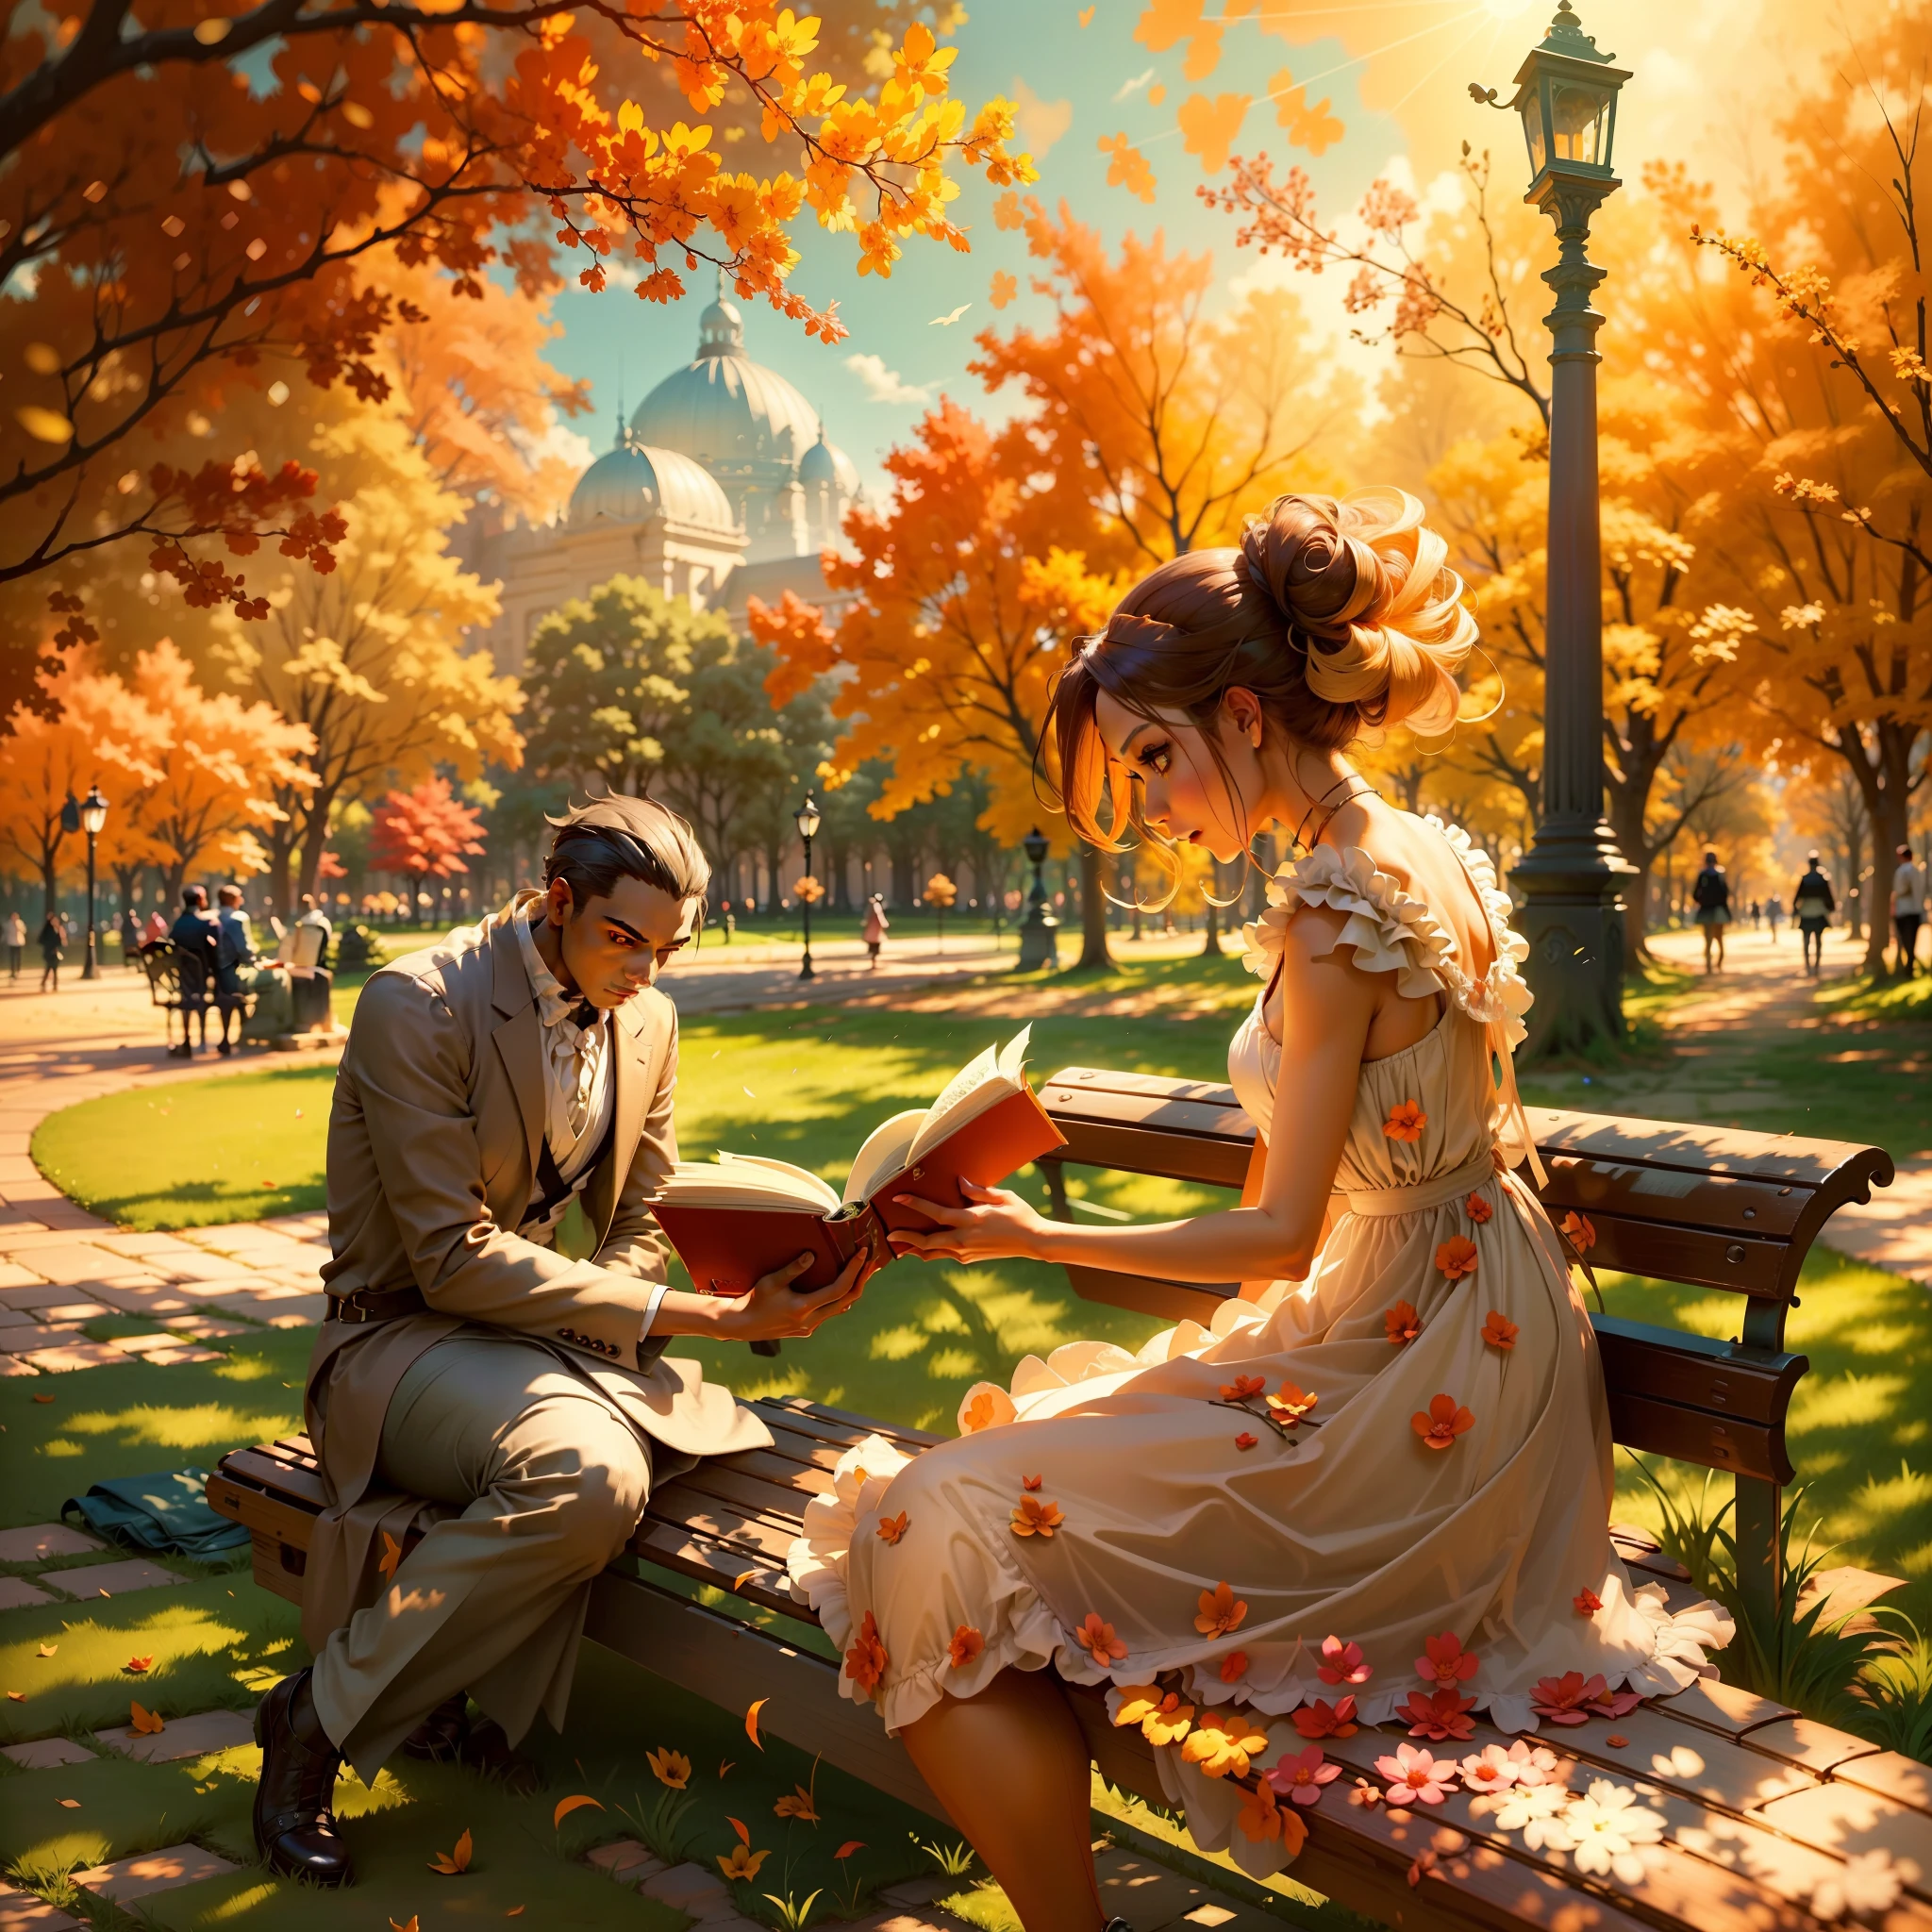 想像一個場景，一個女人在陽光明媚的下午穿過公園. 她穿著優雅的連身裙，增強了她的美麗, 她好奇的目光鎖定了坐在長凳上的男人, 完全沉浸在書本中. 描述背景中太陽光線營造出的充滿活力的氛圍.